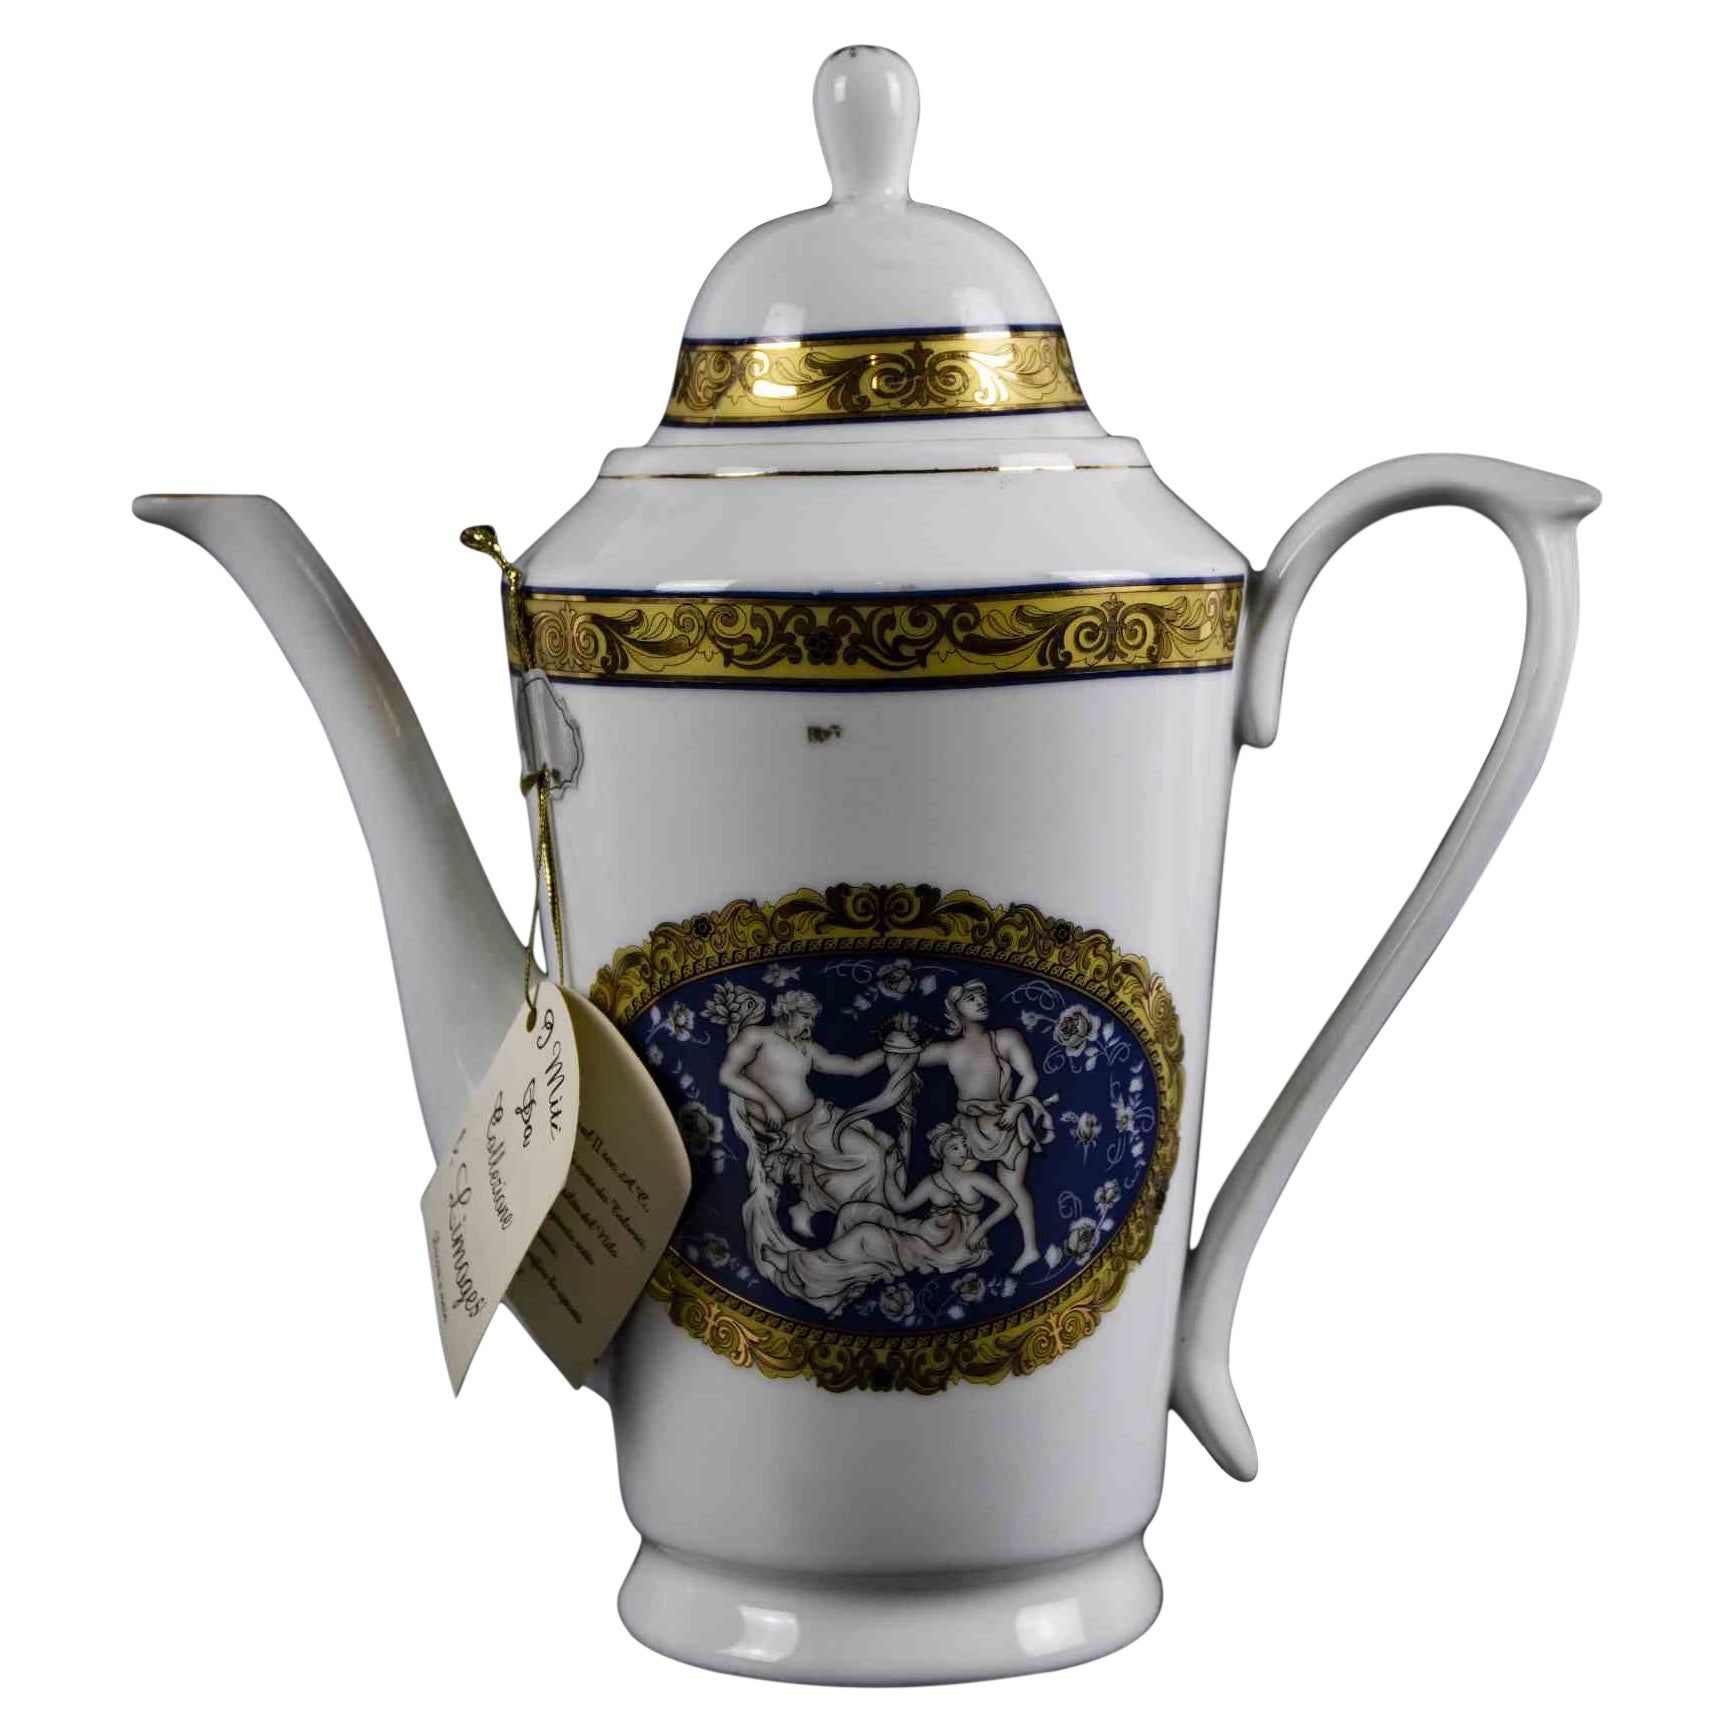 Limoges-Porzellan-Teekanne, 1950er-Jahre